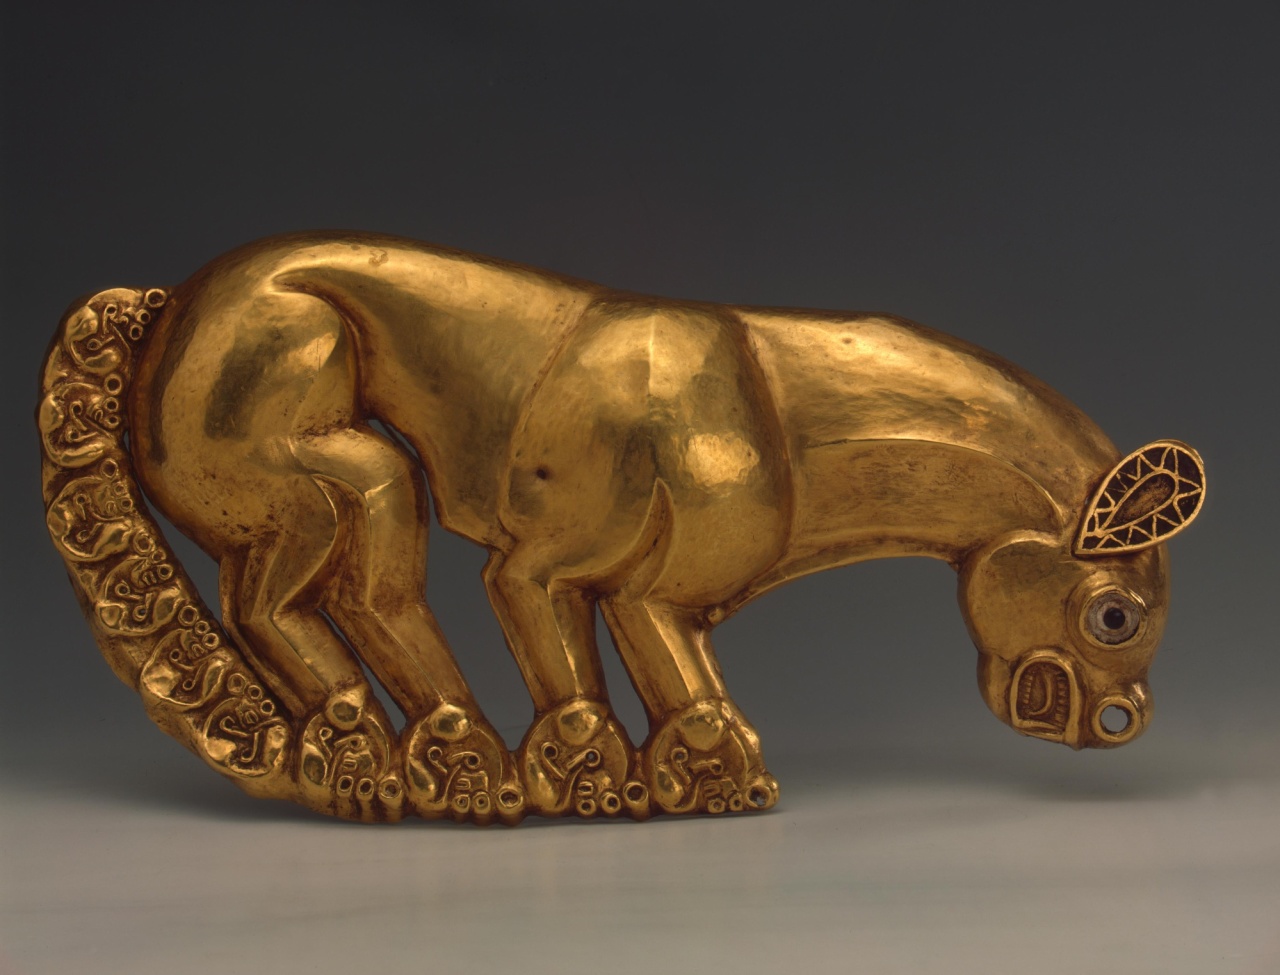 Бляха в виде фигурки пантеры в золотой кладовой Эрмитажа. VII век до н.э.